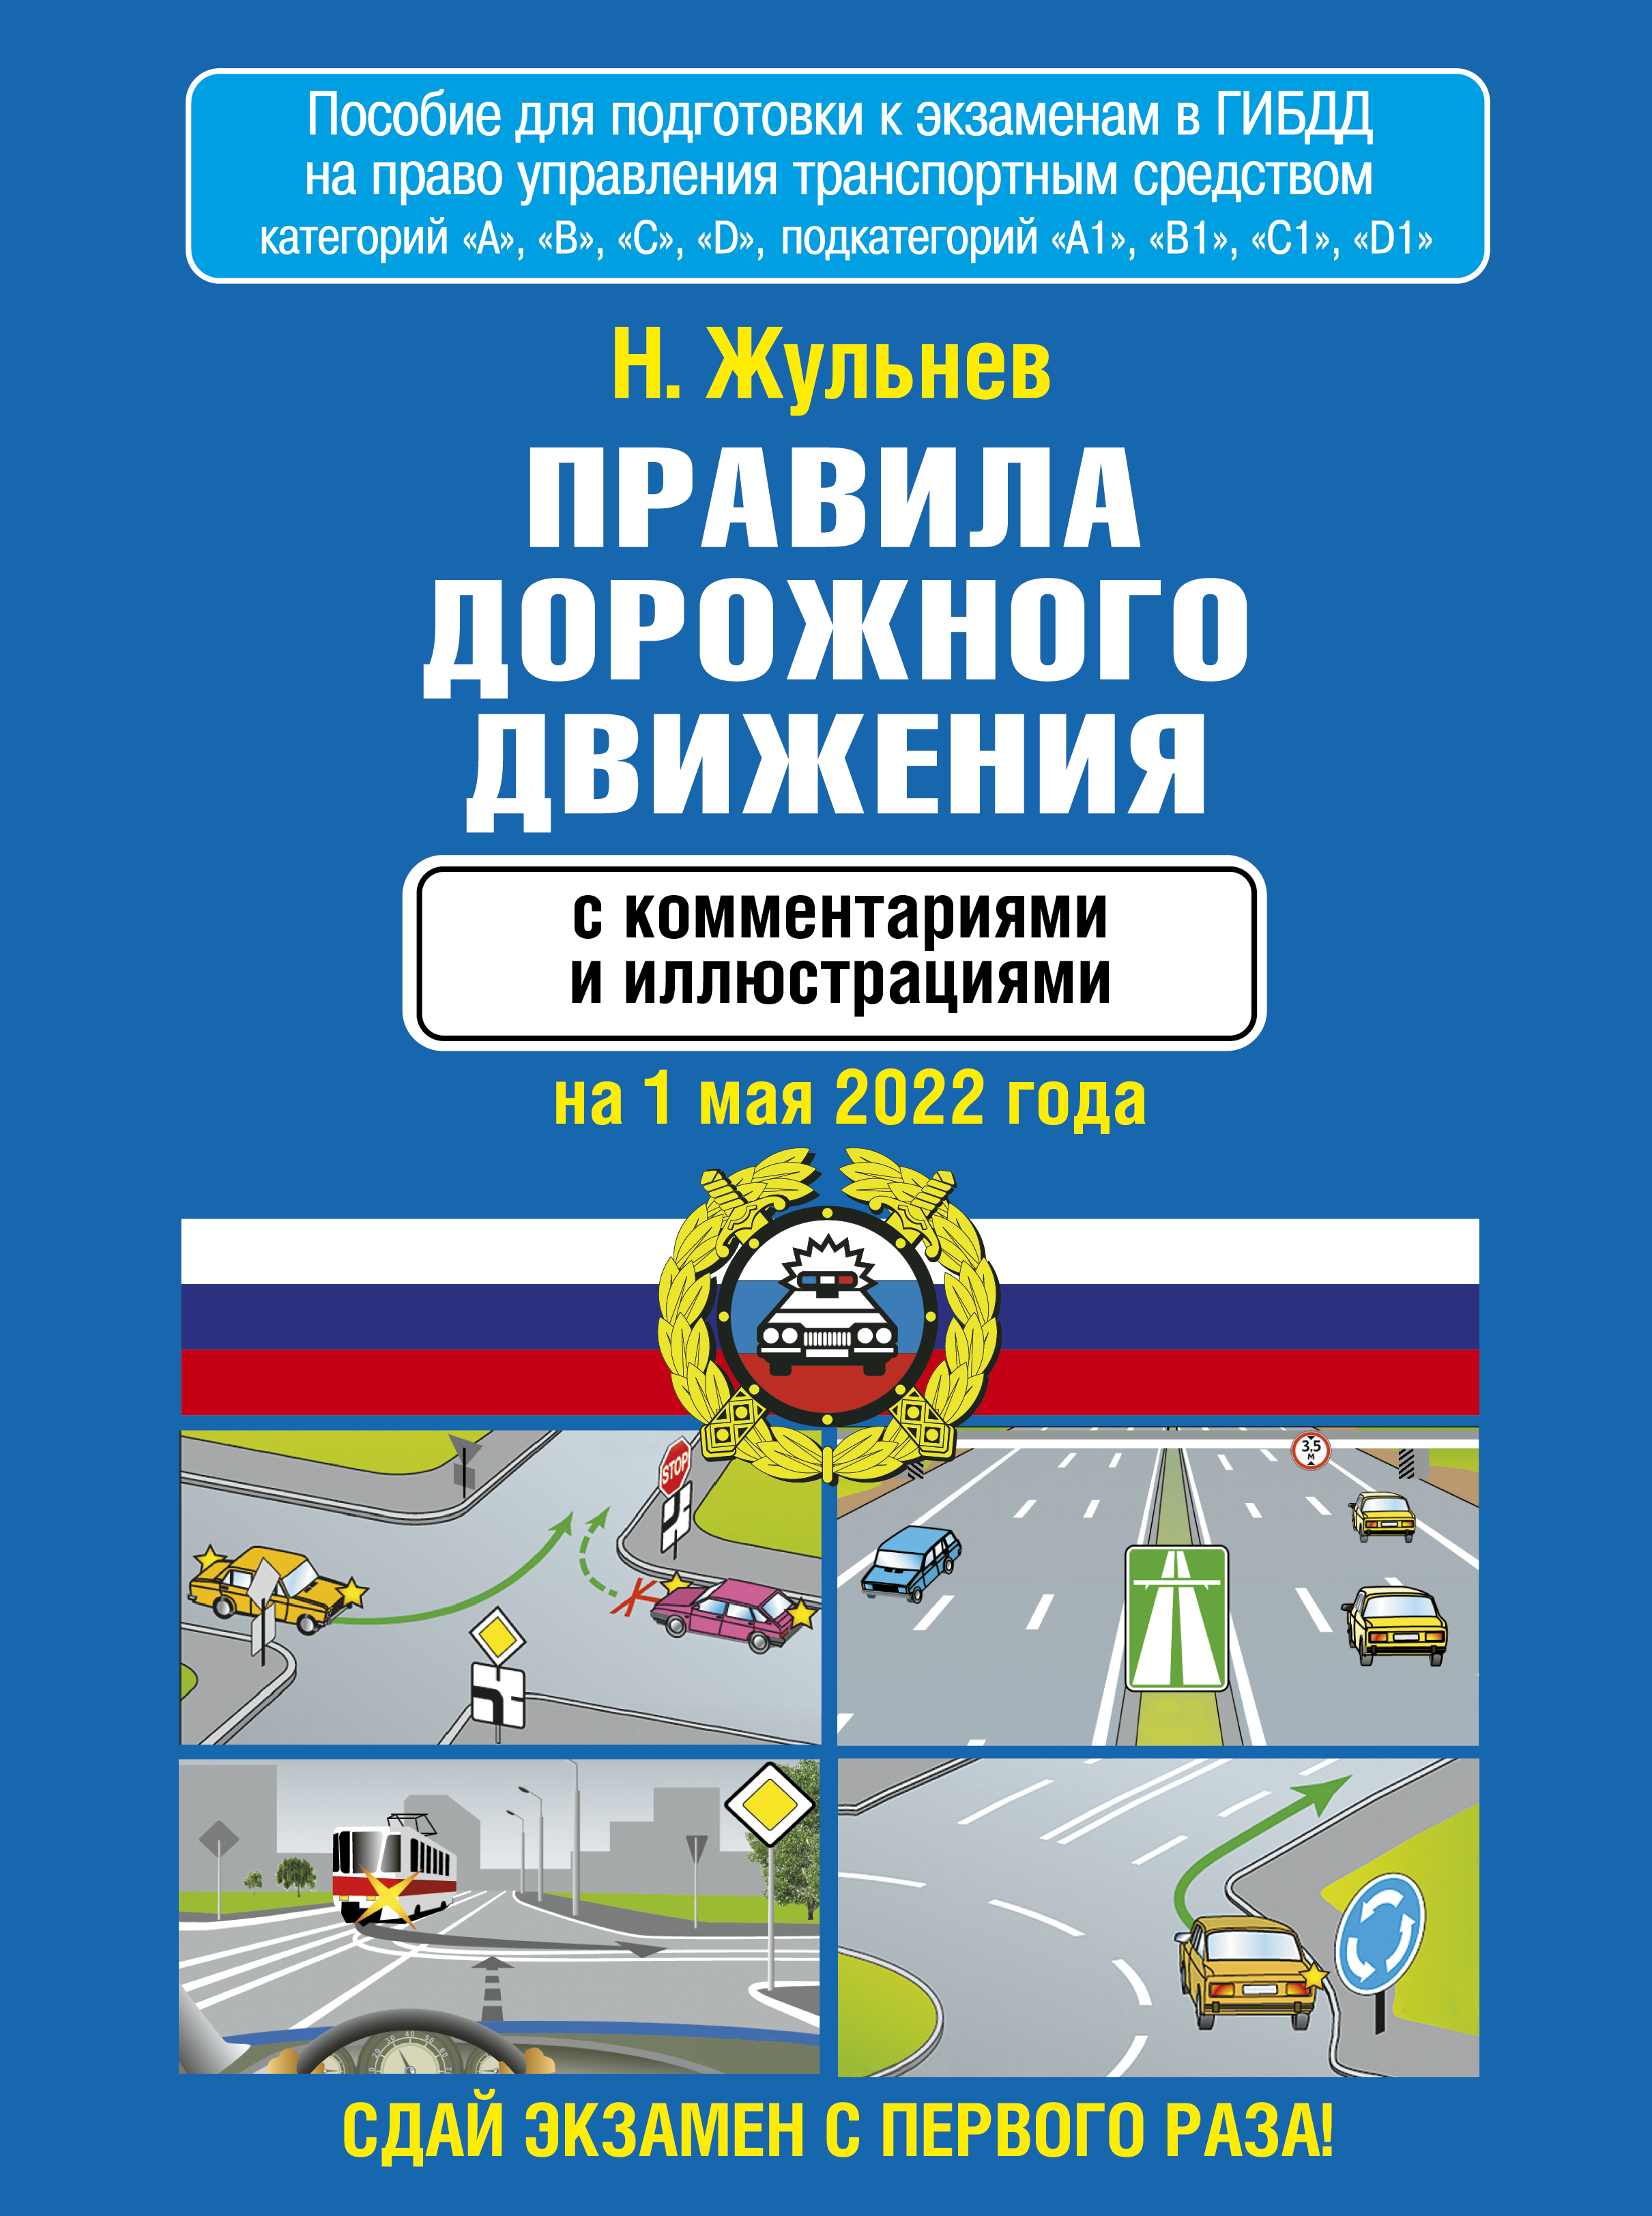 Жульнев Н.Я. Правила дорожного движения с комментариями и иллюстрациями на 1 мая 2022 года 